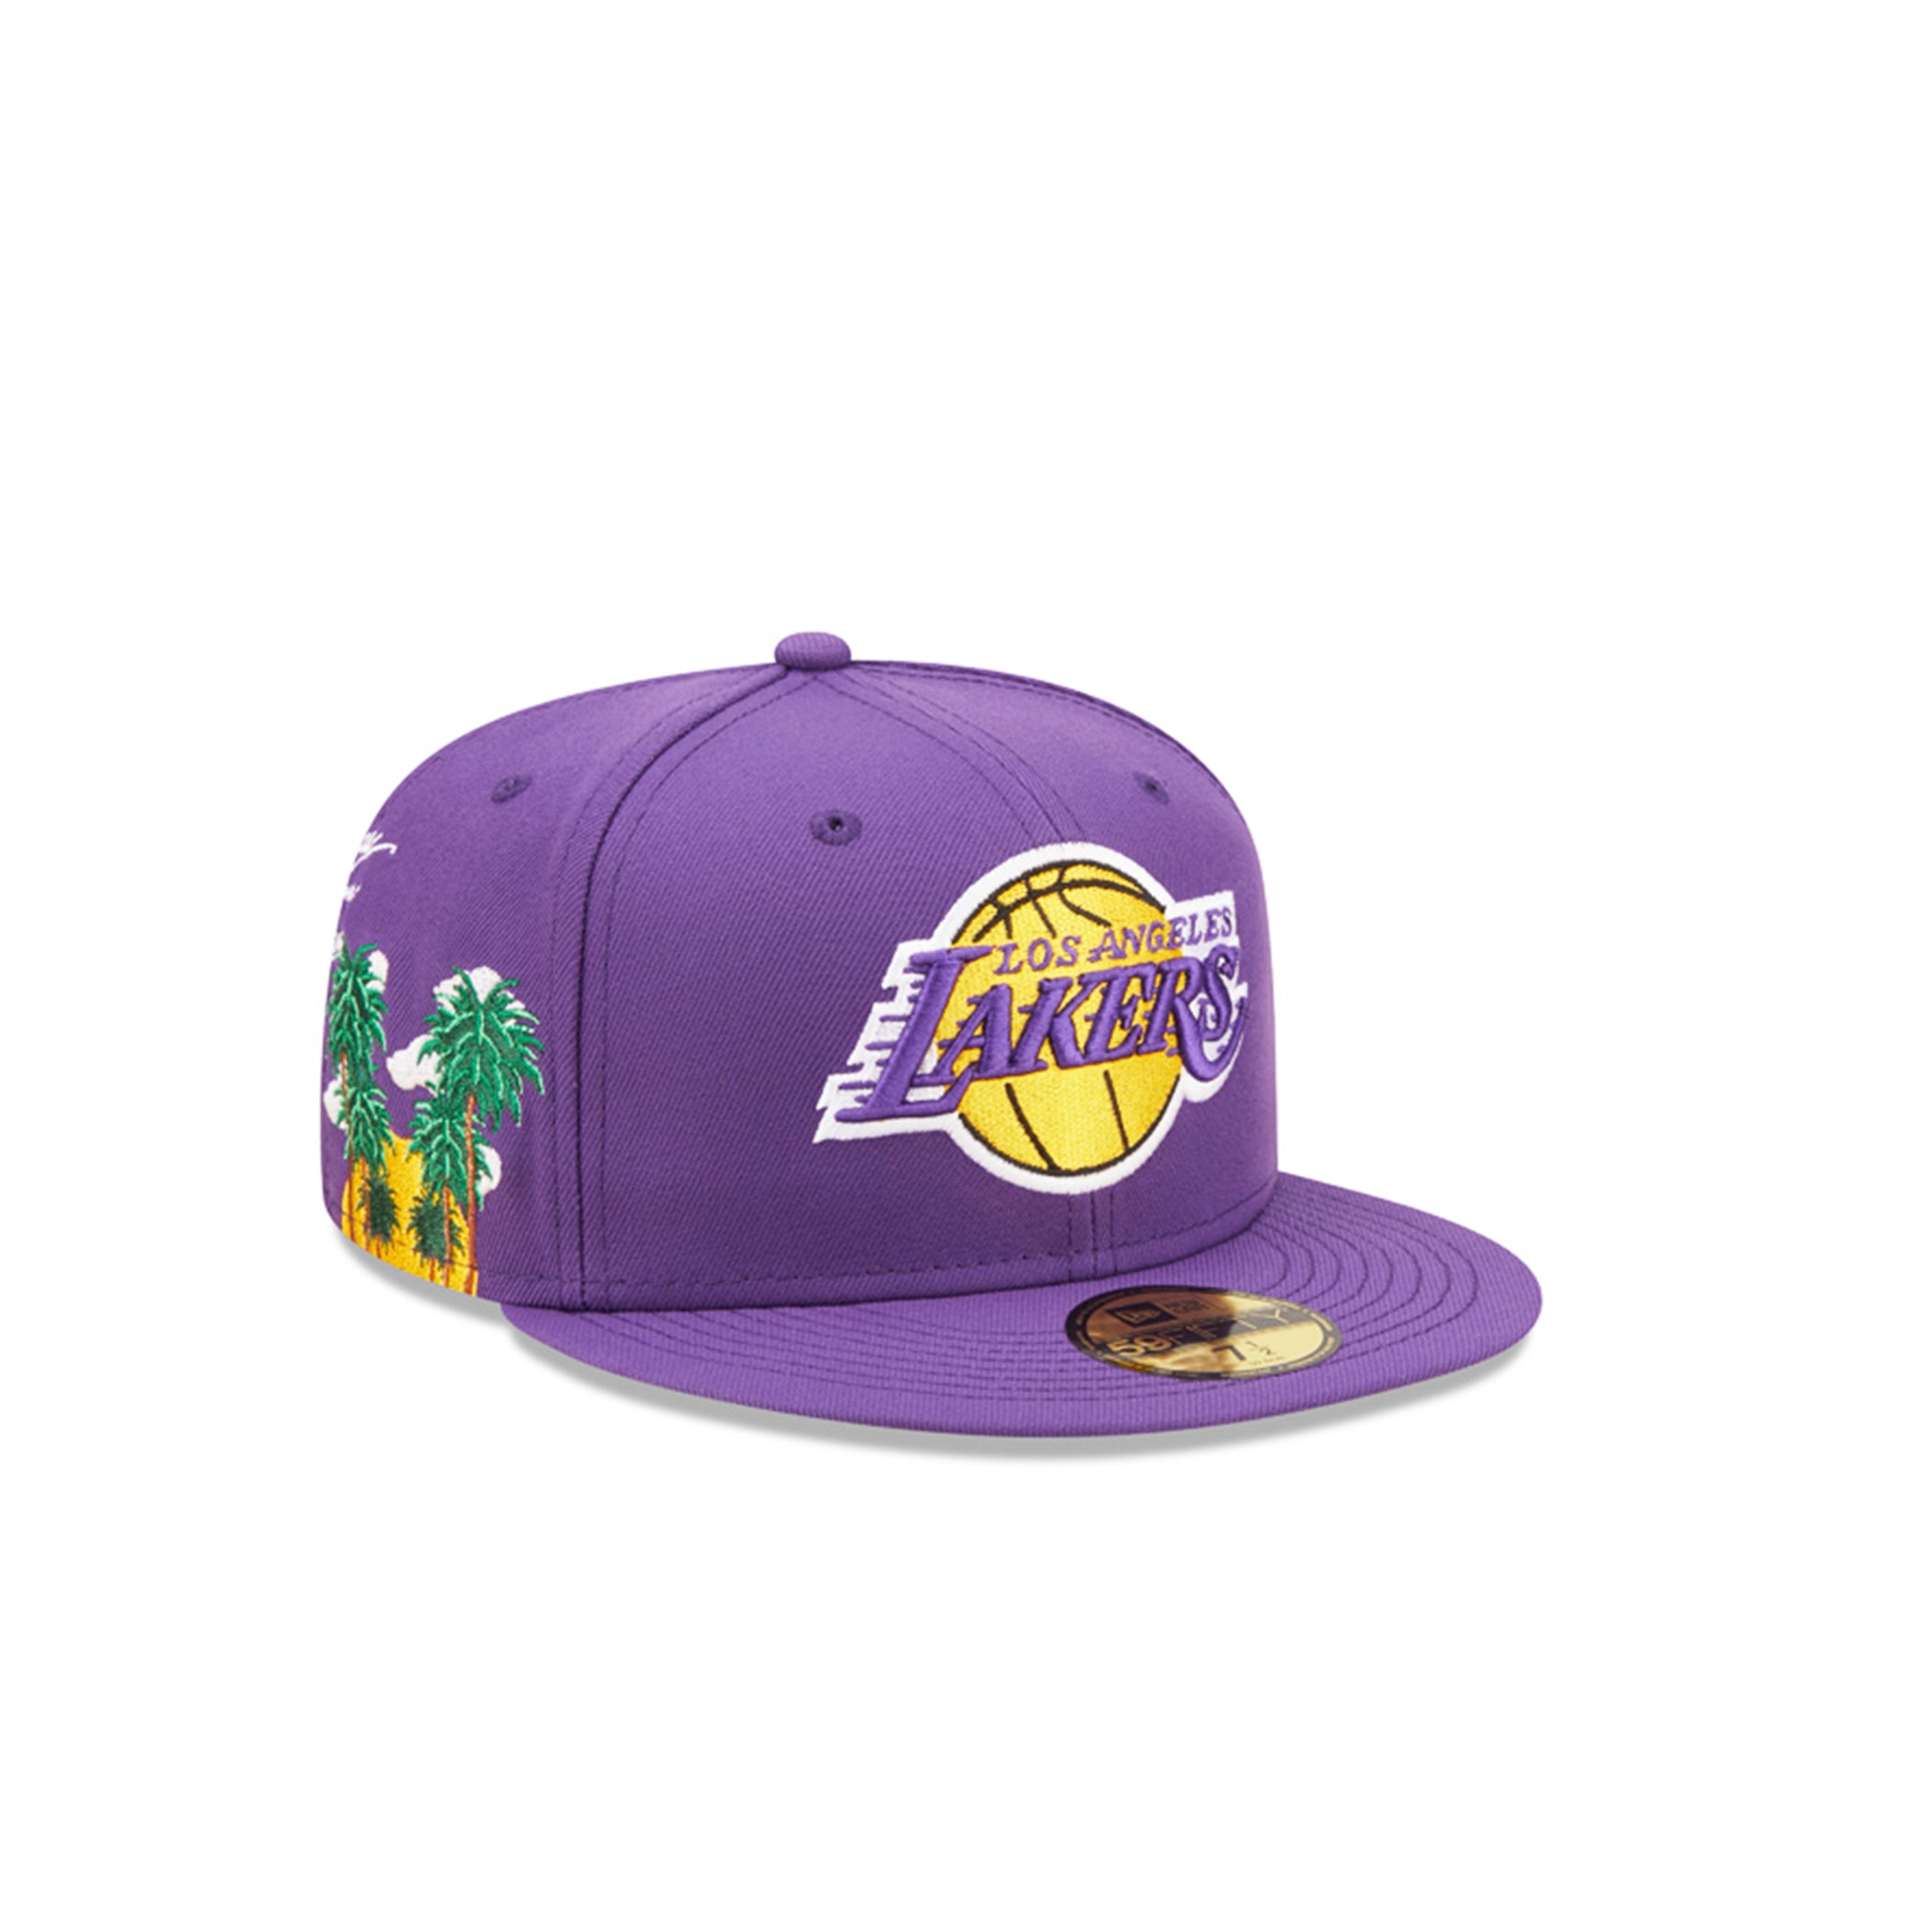 LA Lakers New Era Team Print 950 Snapback Purple - The Locker Room